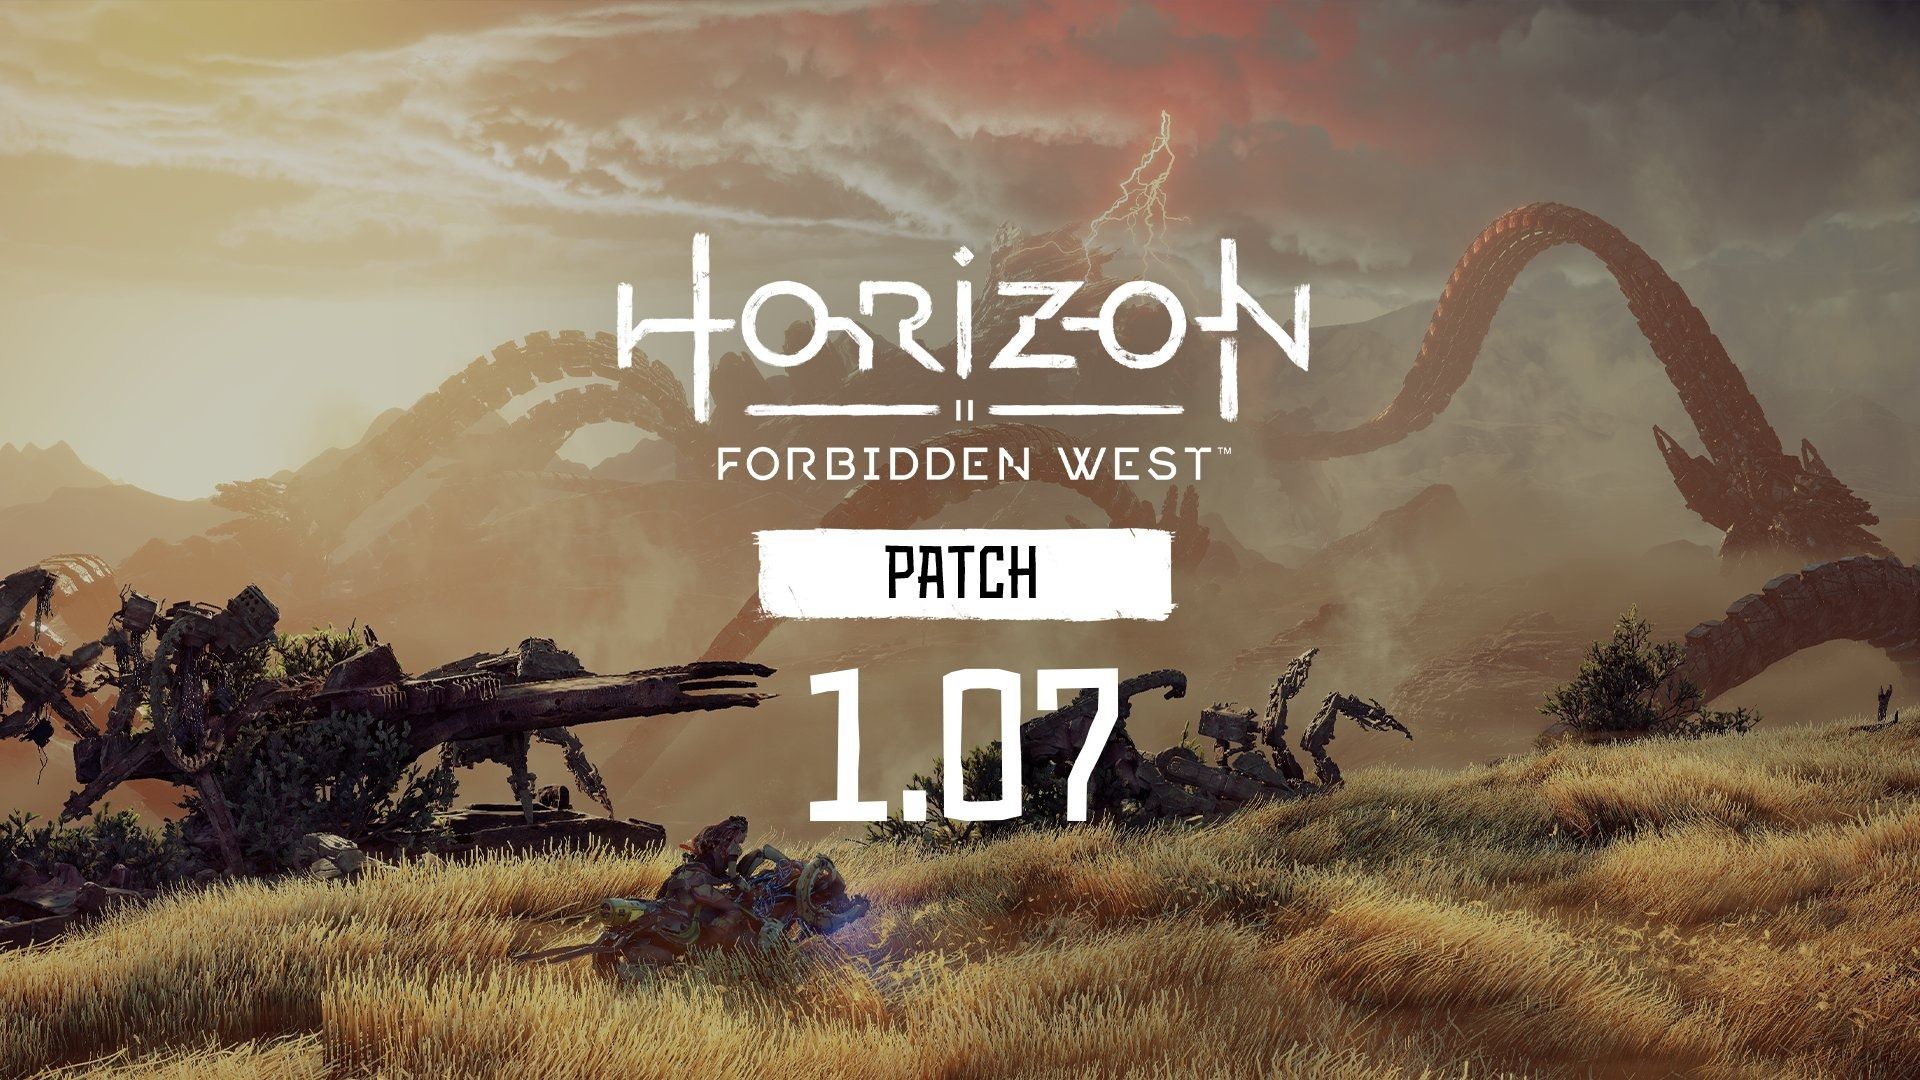 horizon forbidden west update march 9